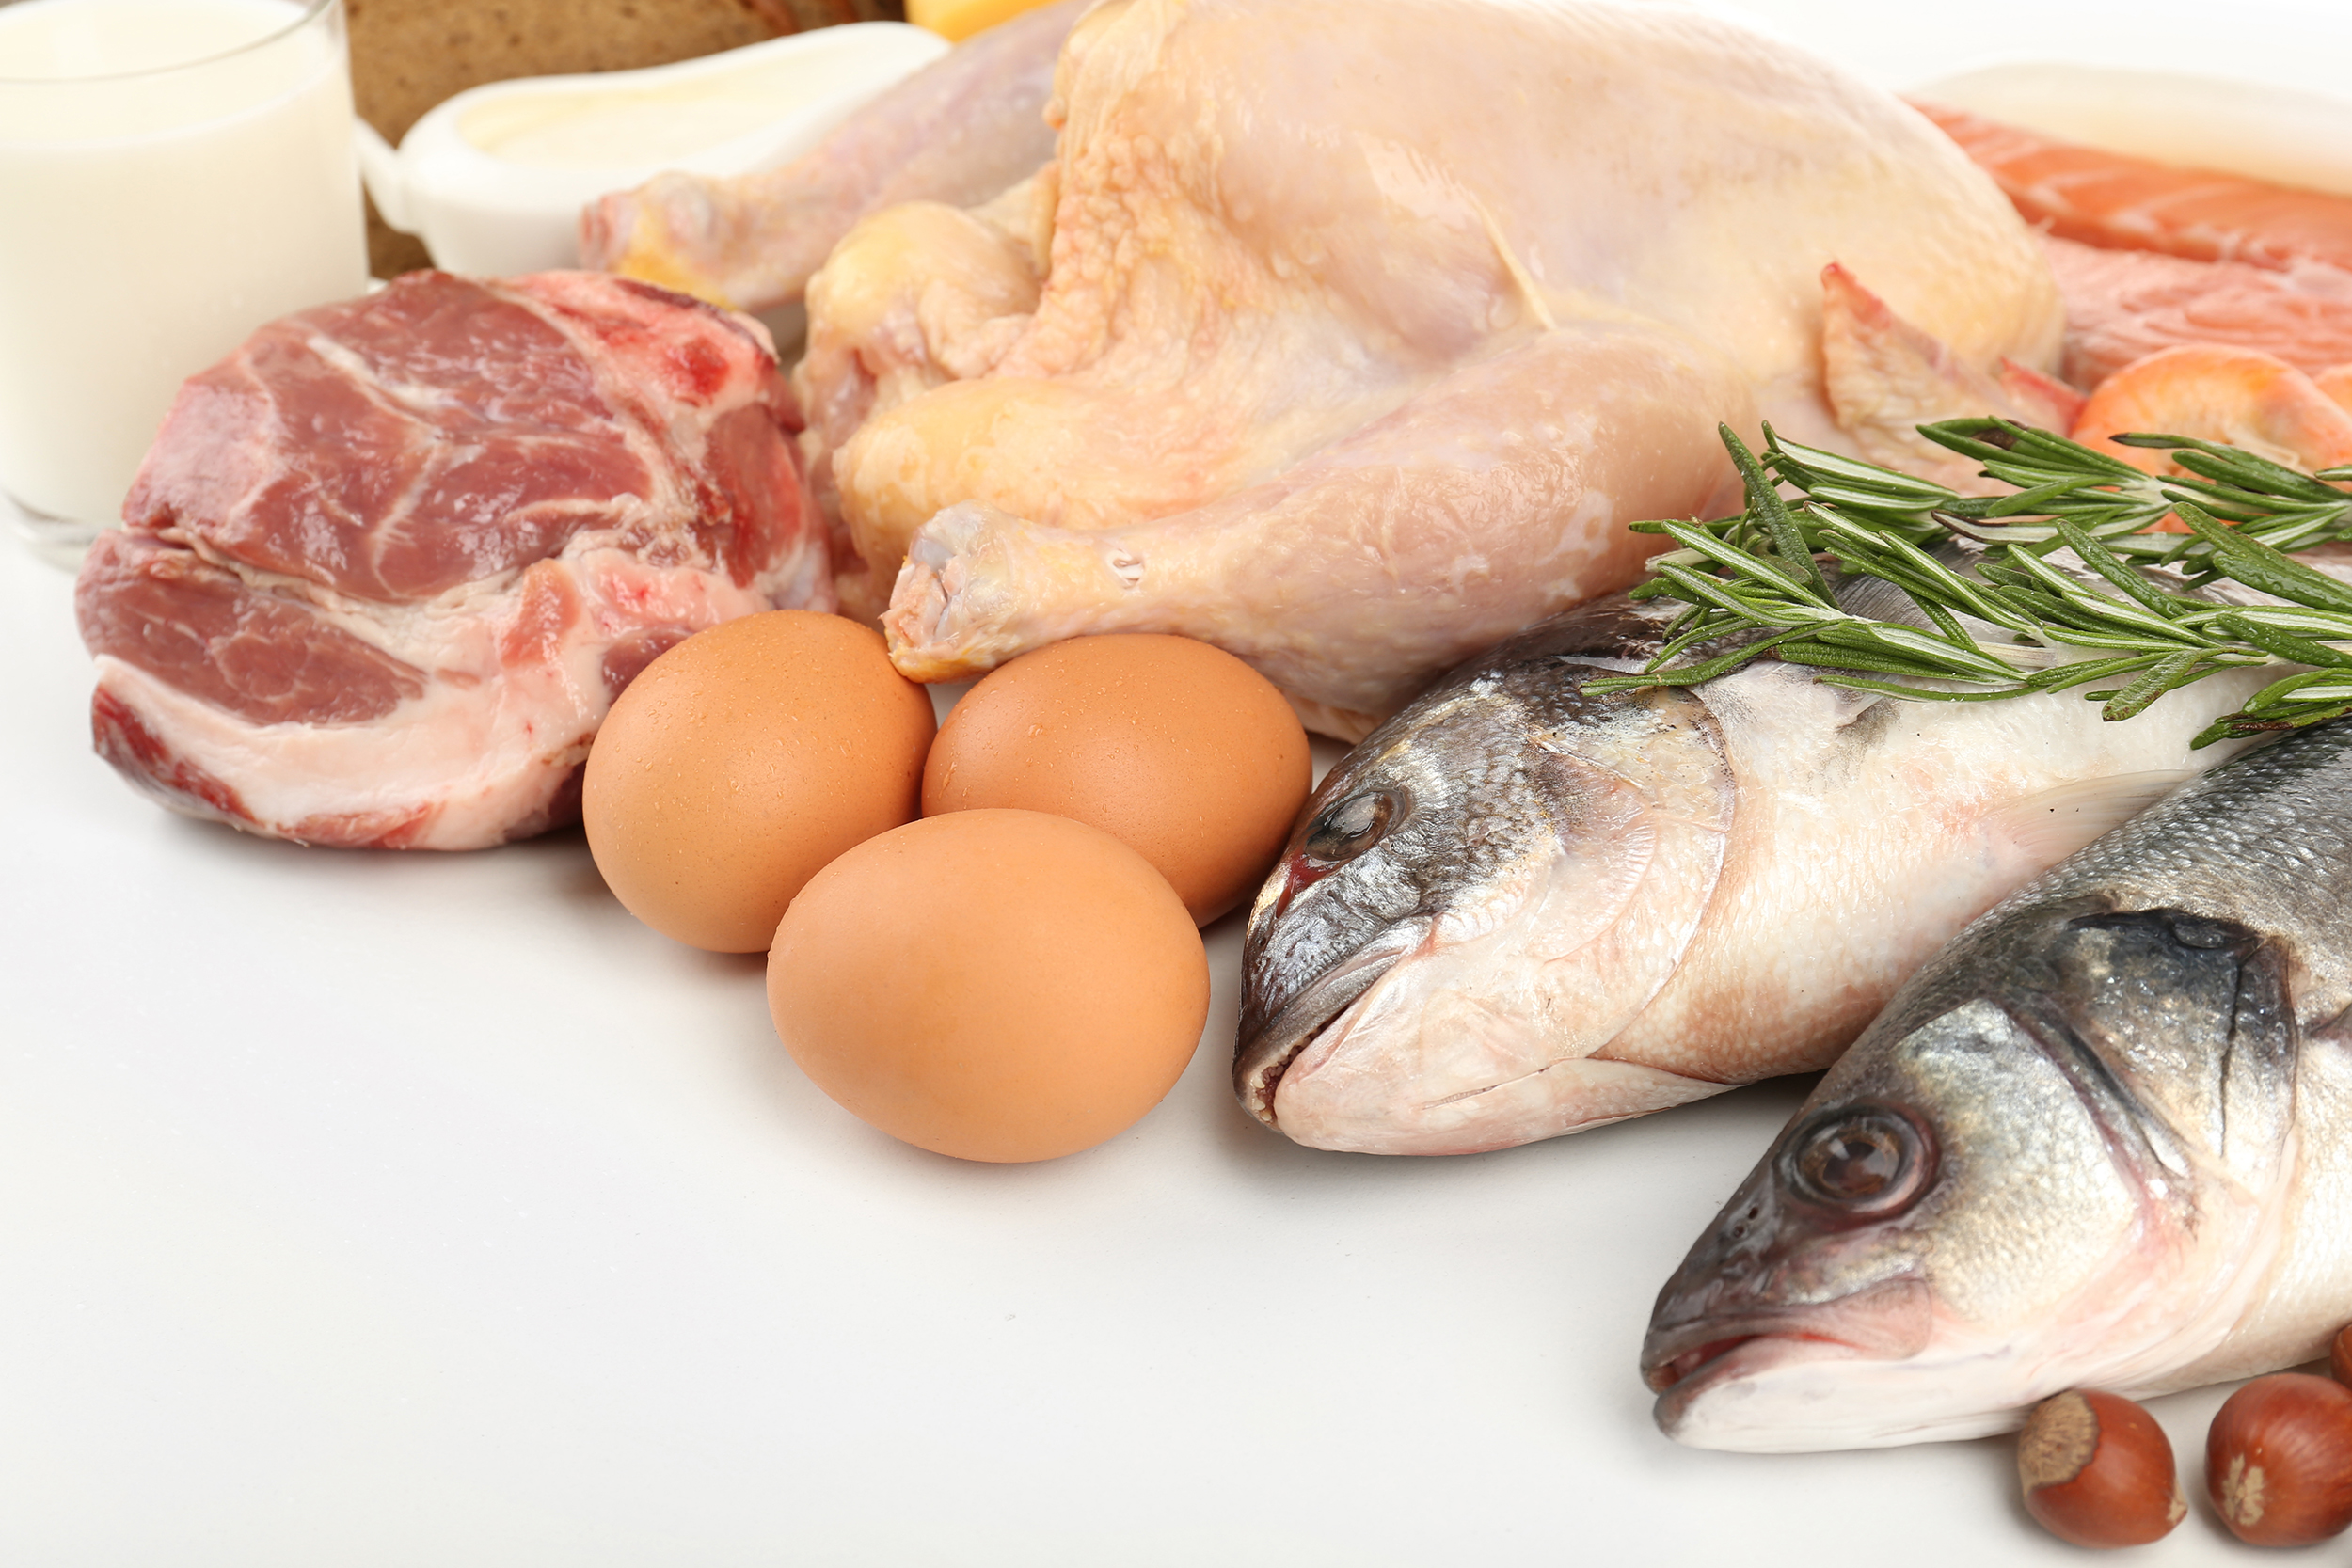 Spis kylling eller fisk, som er sunnere